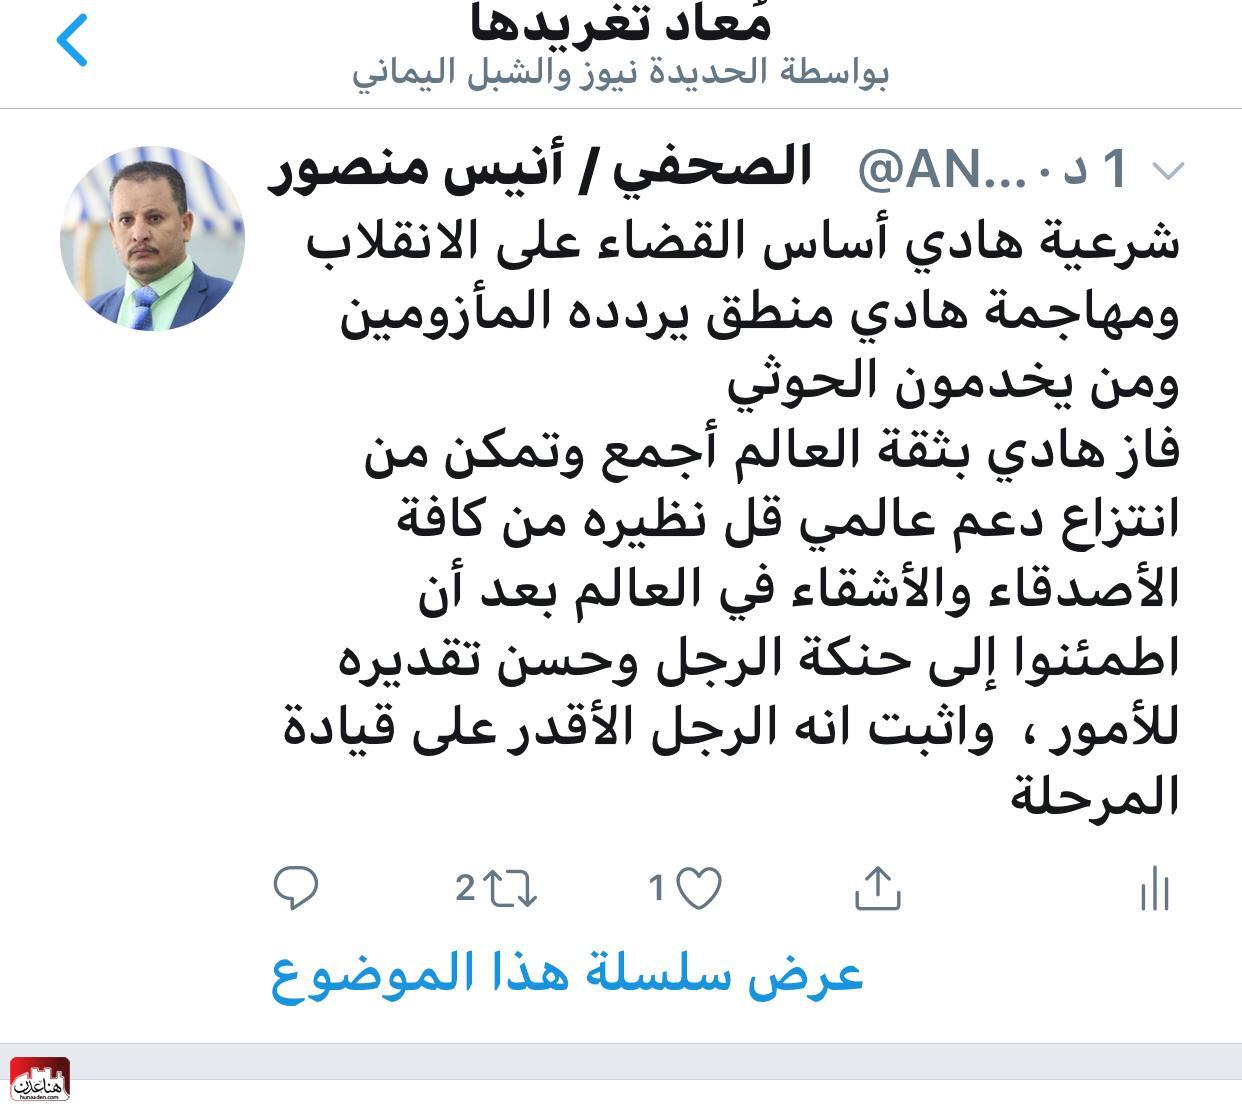 تغريدات وتعليقات نارية ضد الفريق ضاحي خلفان باستطاعة هادي اعفاء الامارات من التحالف بقرار جمهوري